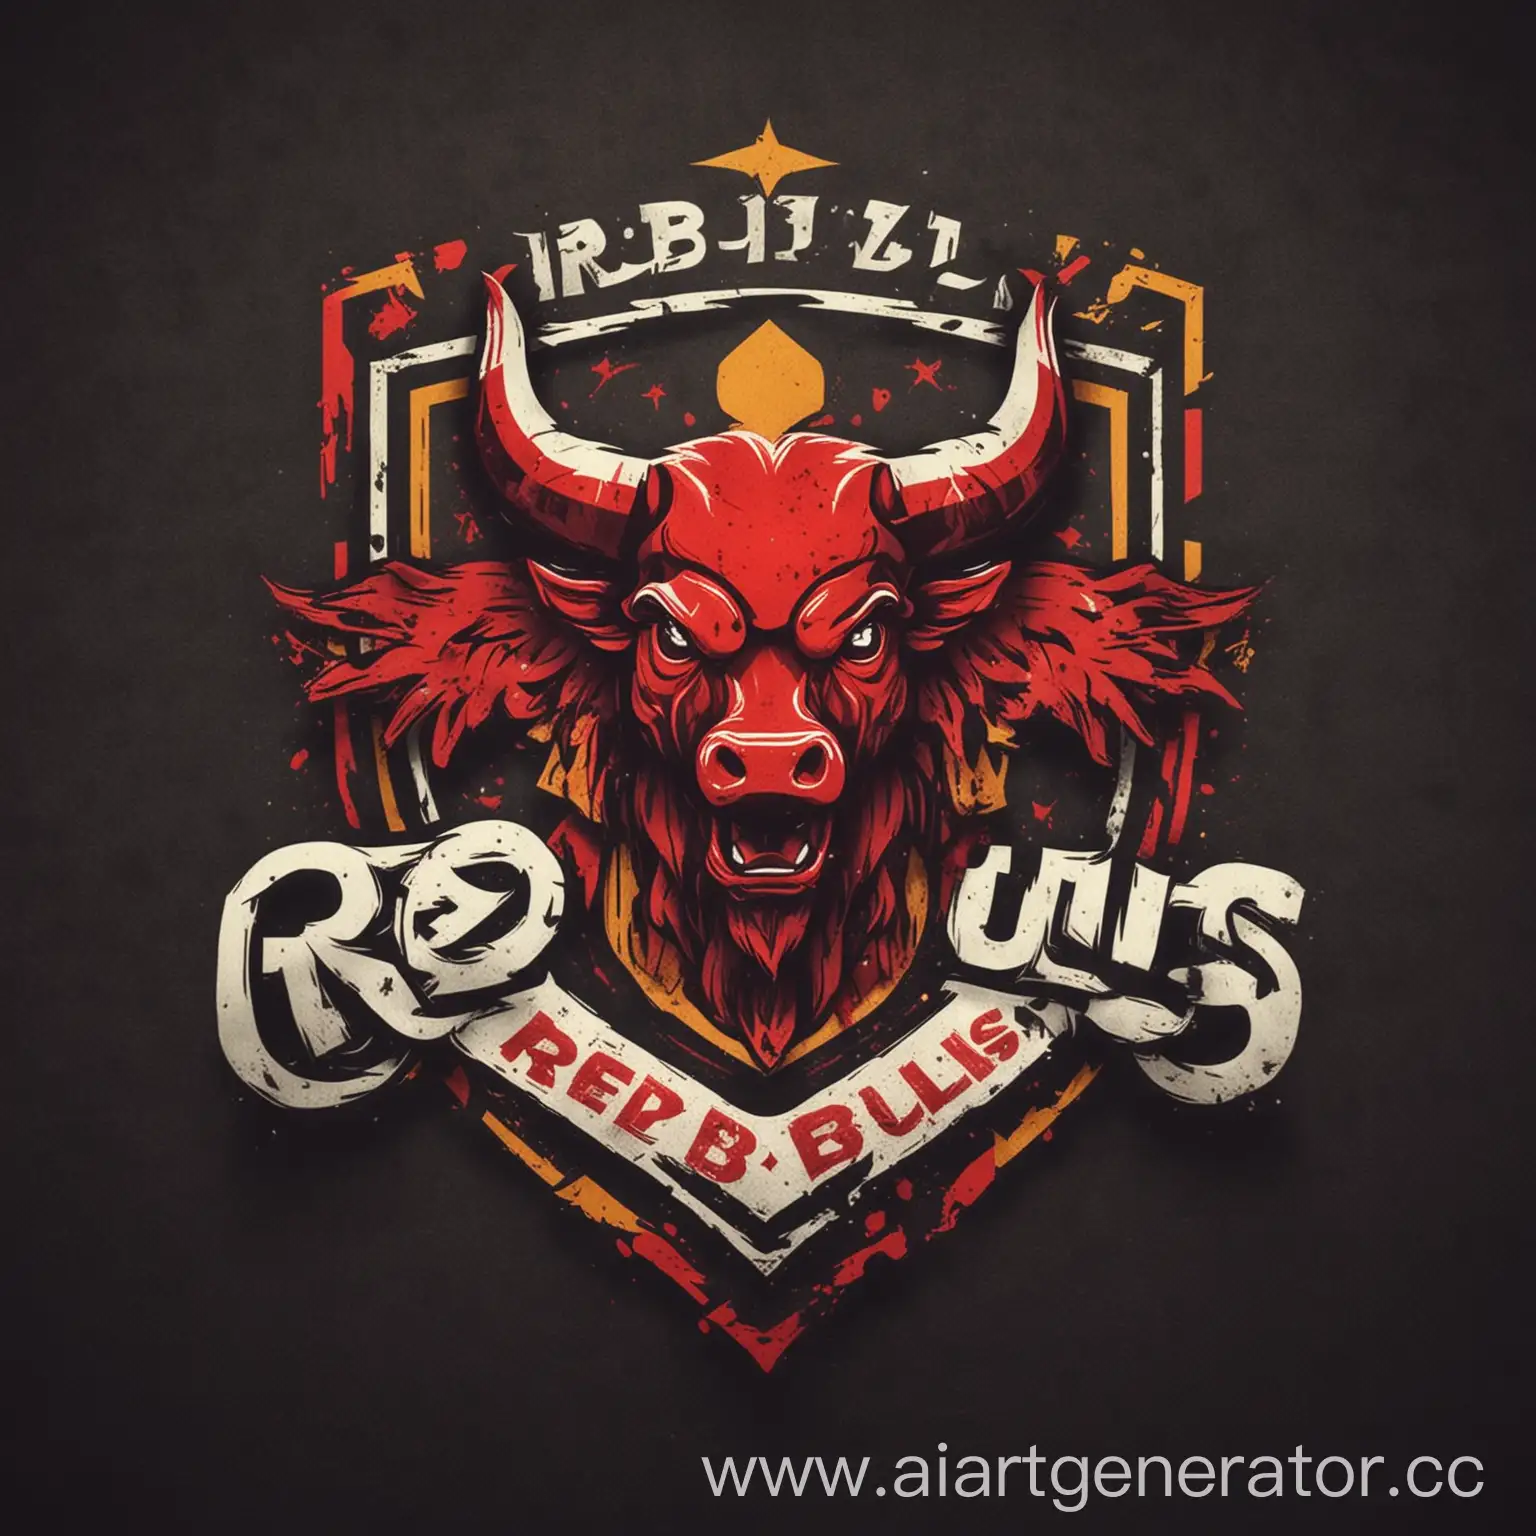 Логотип для футбольной команды с названием Red Bulls с названием команды без ошибок
